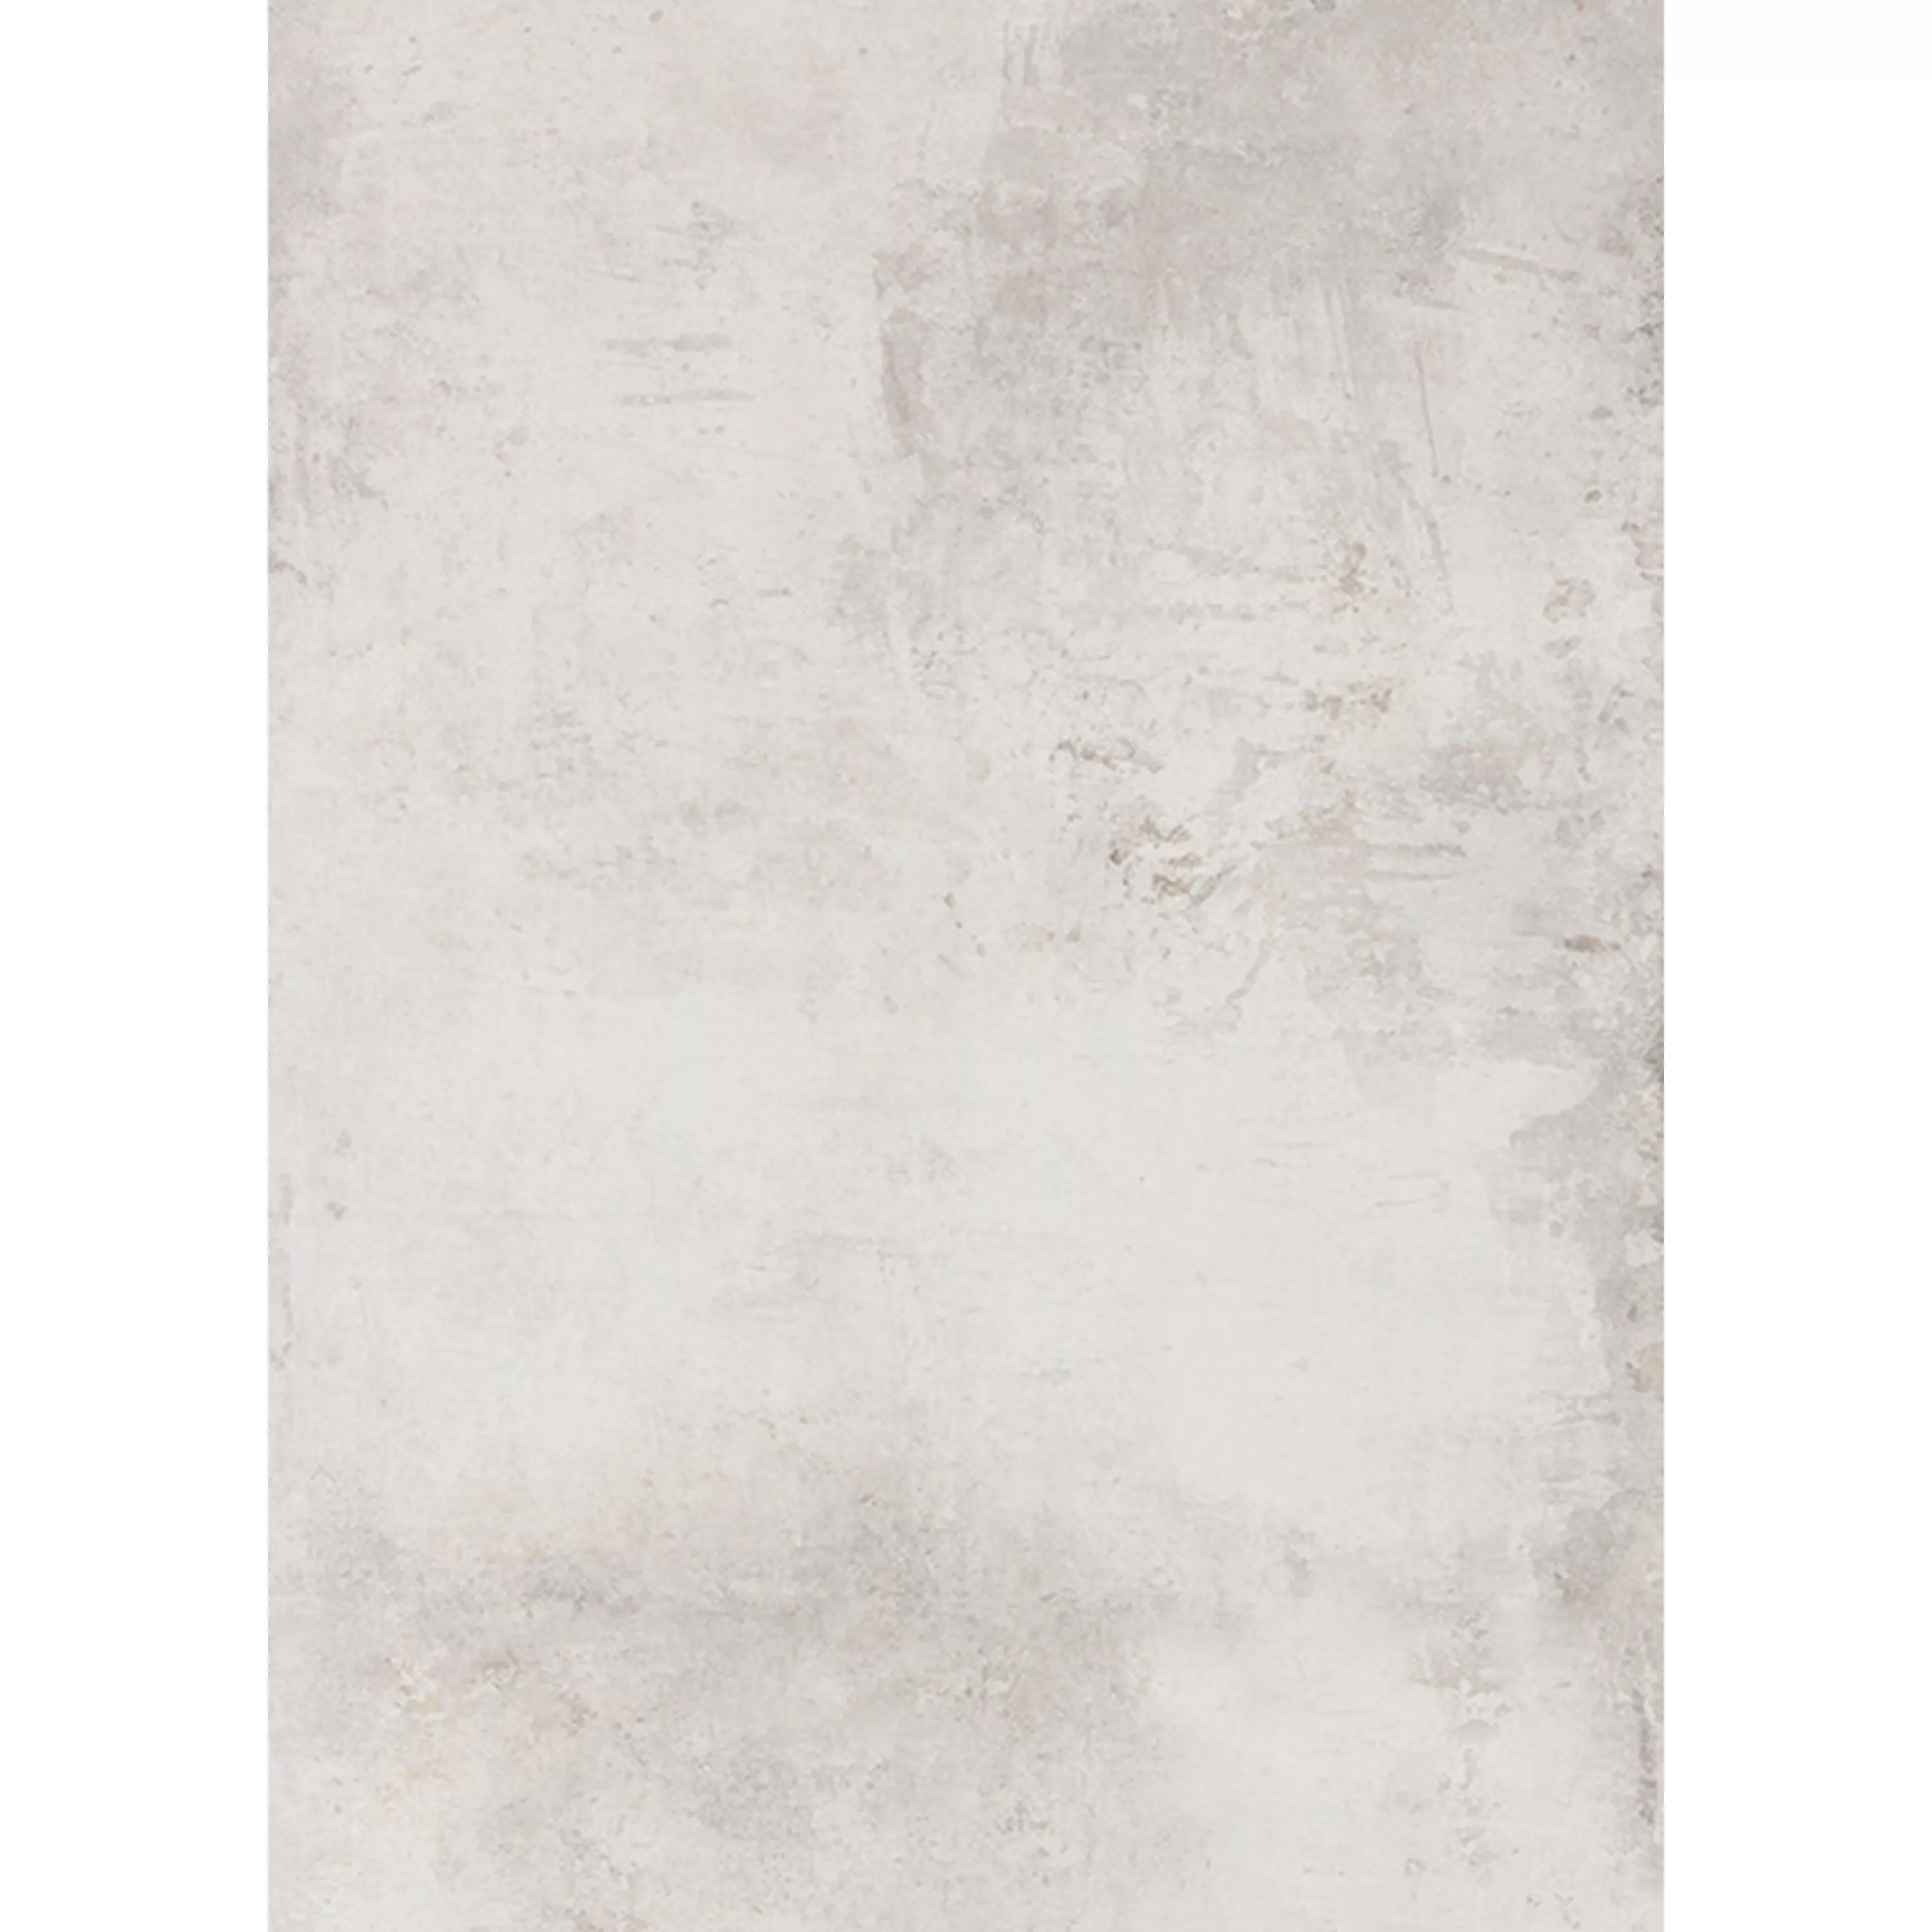 Πλακάκια Δαπέδου Poetic Πέτρινη Όψη R10/A Ασπρο Πλακάκι Bάσης 60x120cm